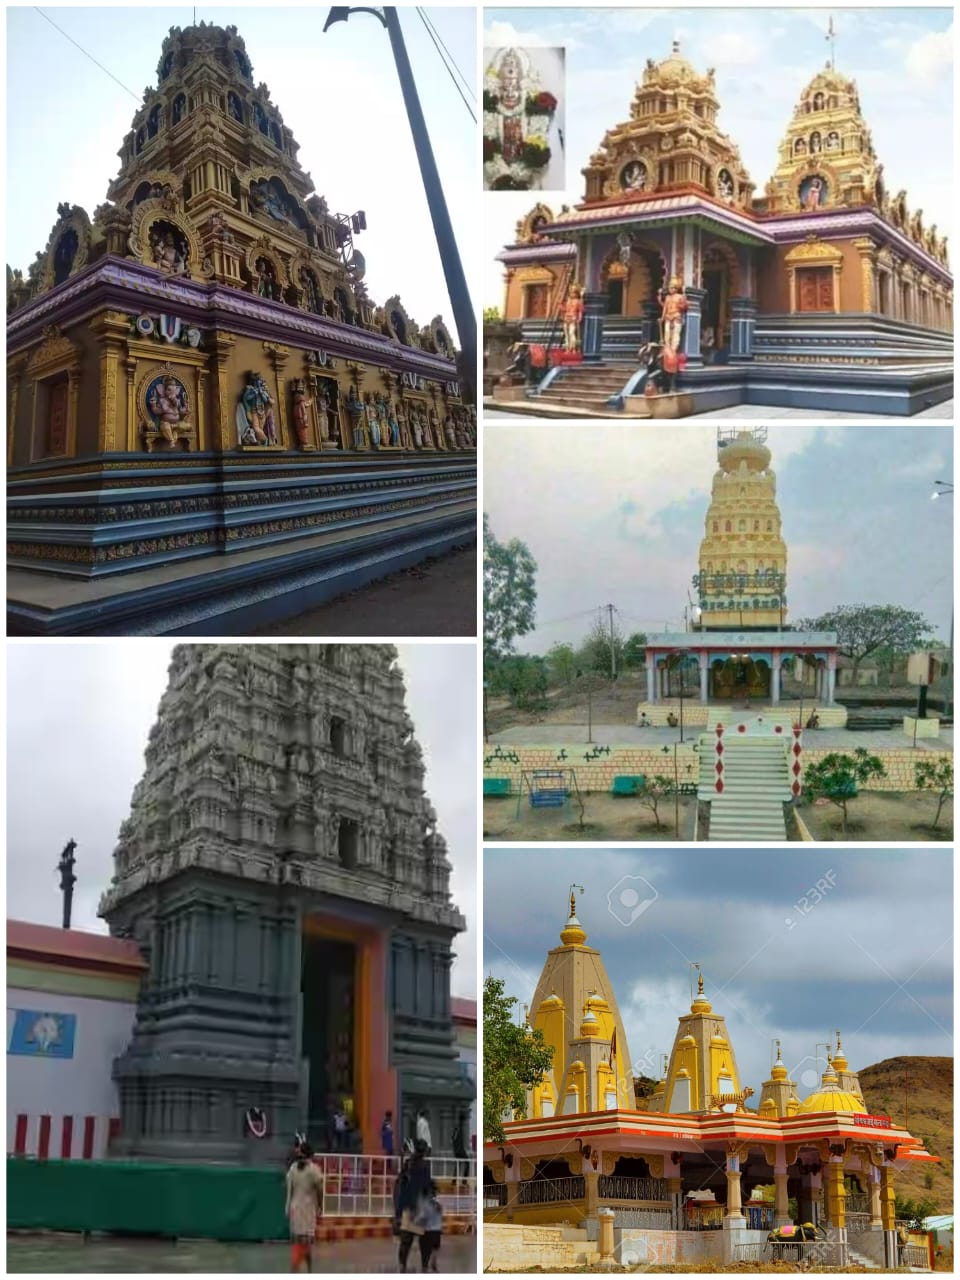 Tathawade temple images